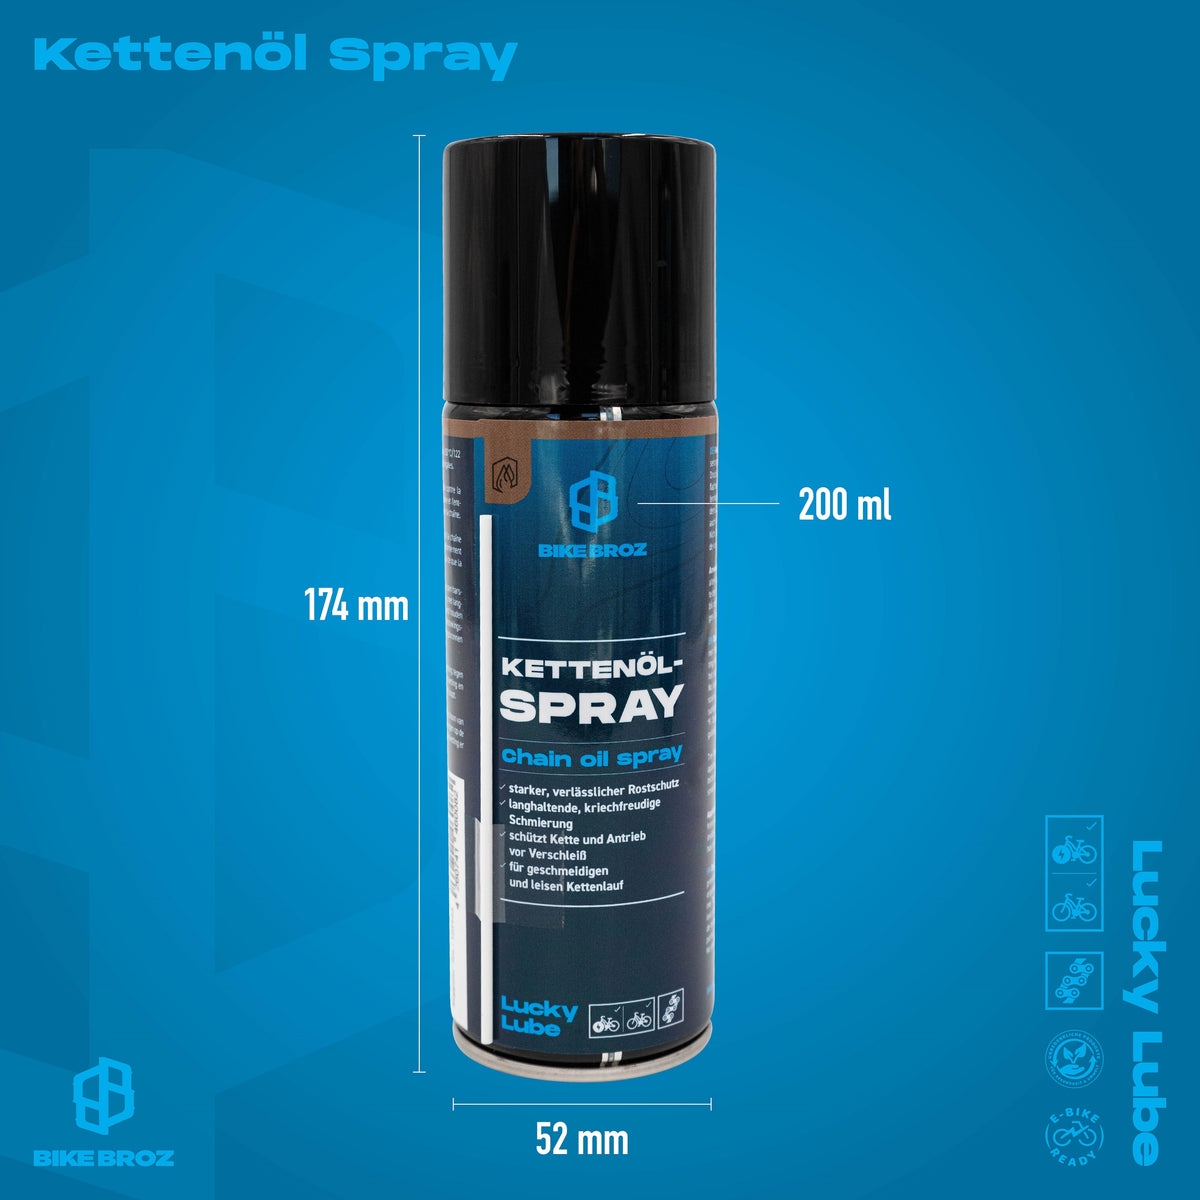 Produktmasse von Kettenöl-Spray 200ml.